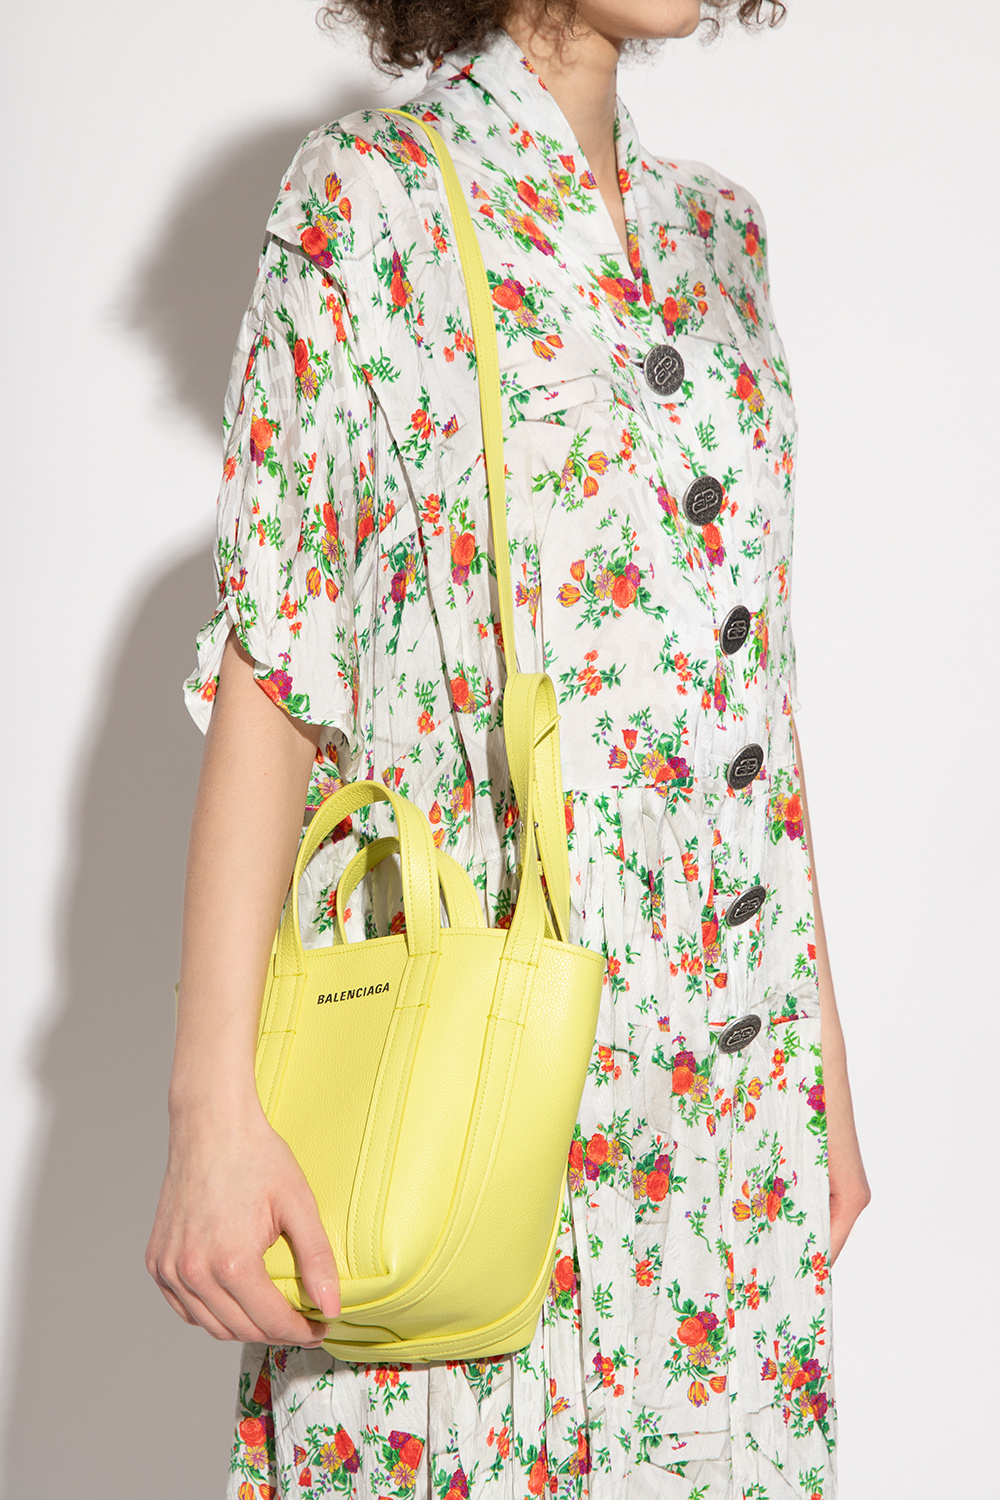 Balenciaga ‘Everyday 2.0 XS’ shopper bag